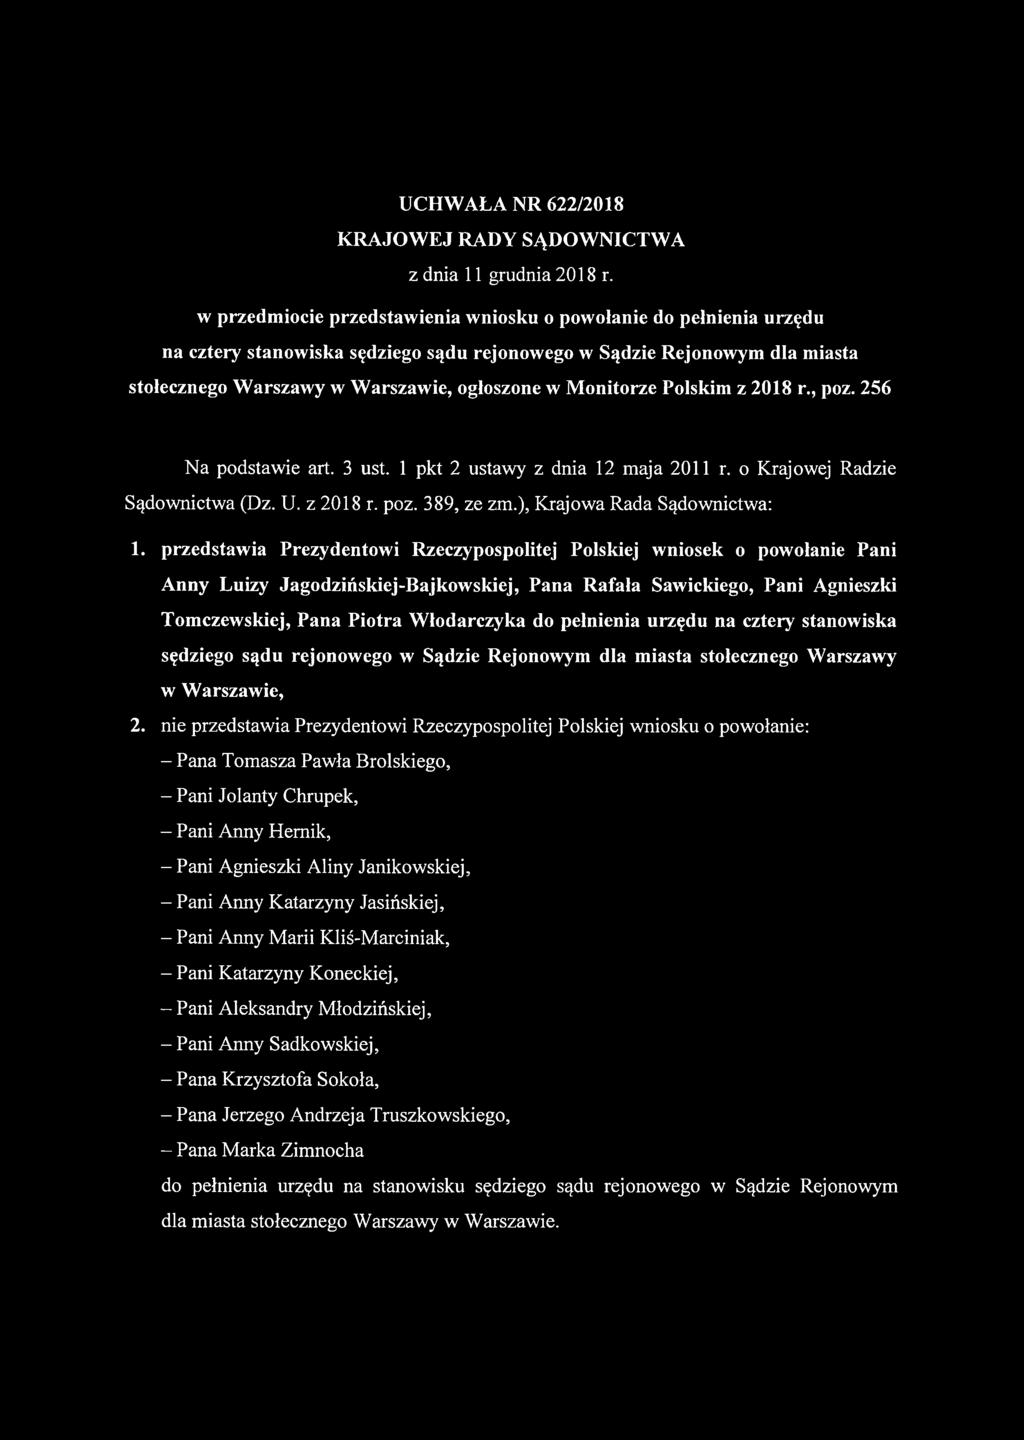 Monitorze Polskim z 2018 r., poz. 256 Na podstawie art. 3 ust. 1 pkt 2 ustawy z dnia 12 maja 2011 r. o Krajowej Radzie Sądownictwa (Dz. U. z 2018 r. poz. 389, ze zm.), Krajowa Rada Sądownictwa: 1.